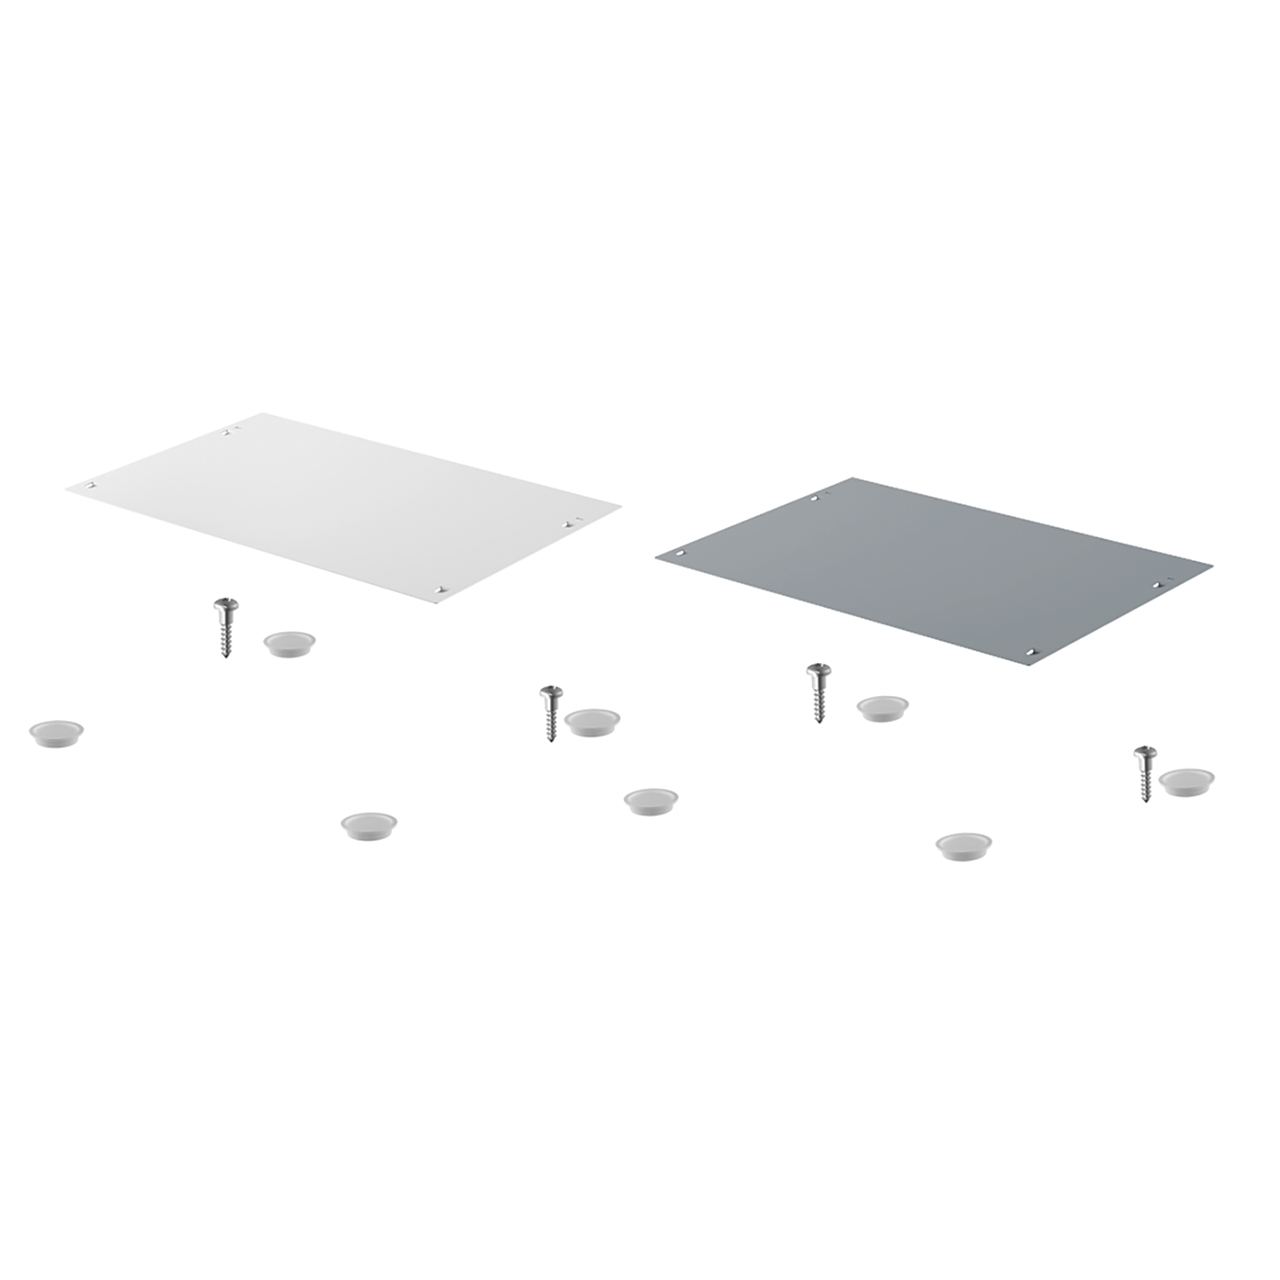 HETTICH Deckel für SmarTray Stahl 50 mm mit Kassette, weiß, 9208308